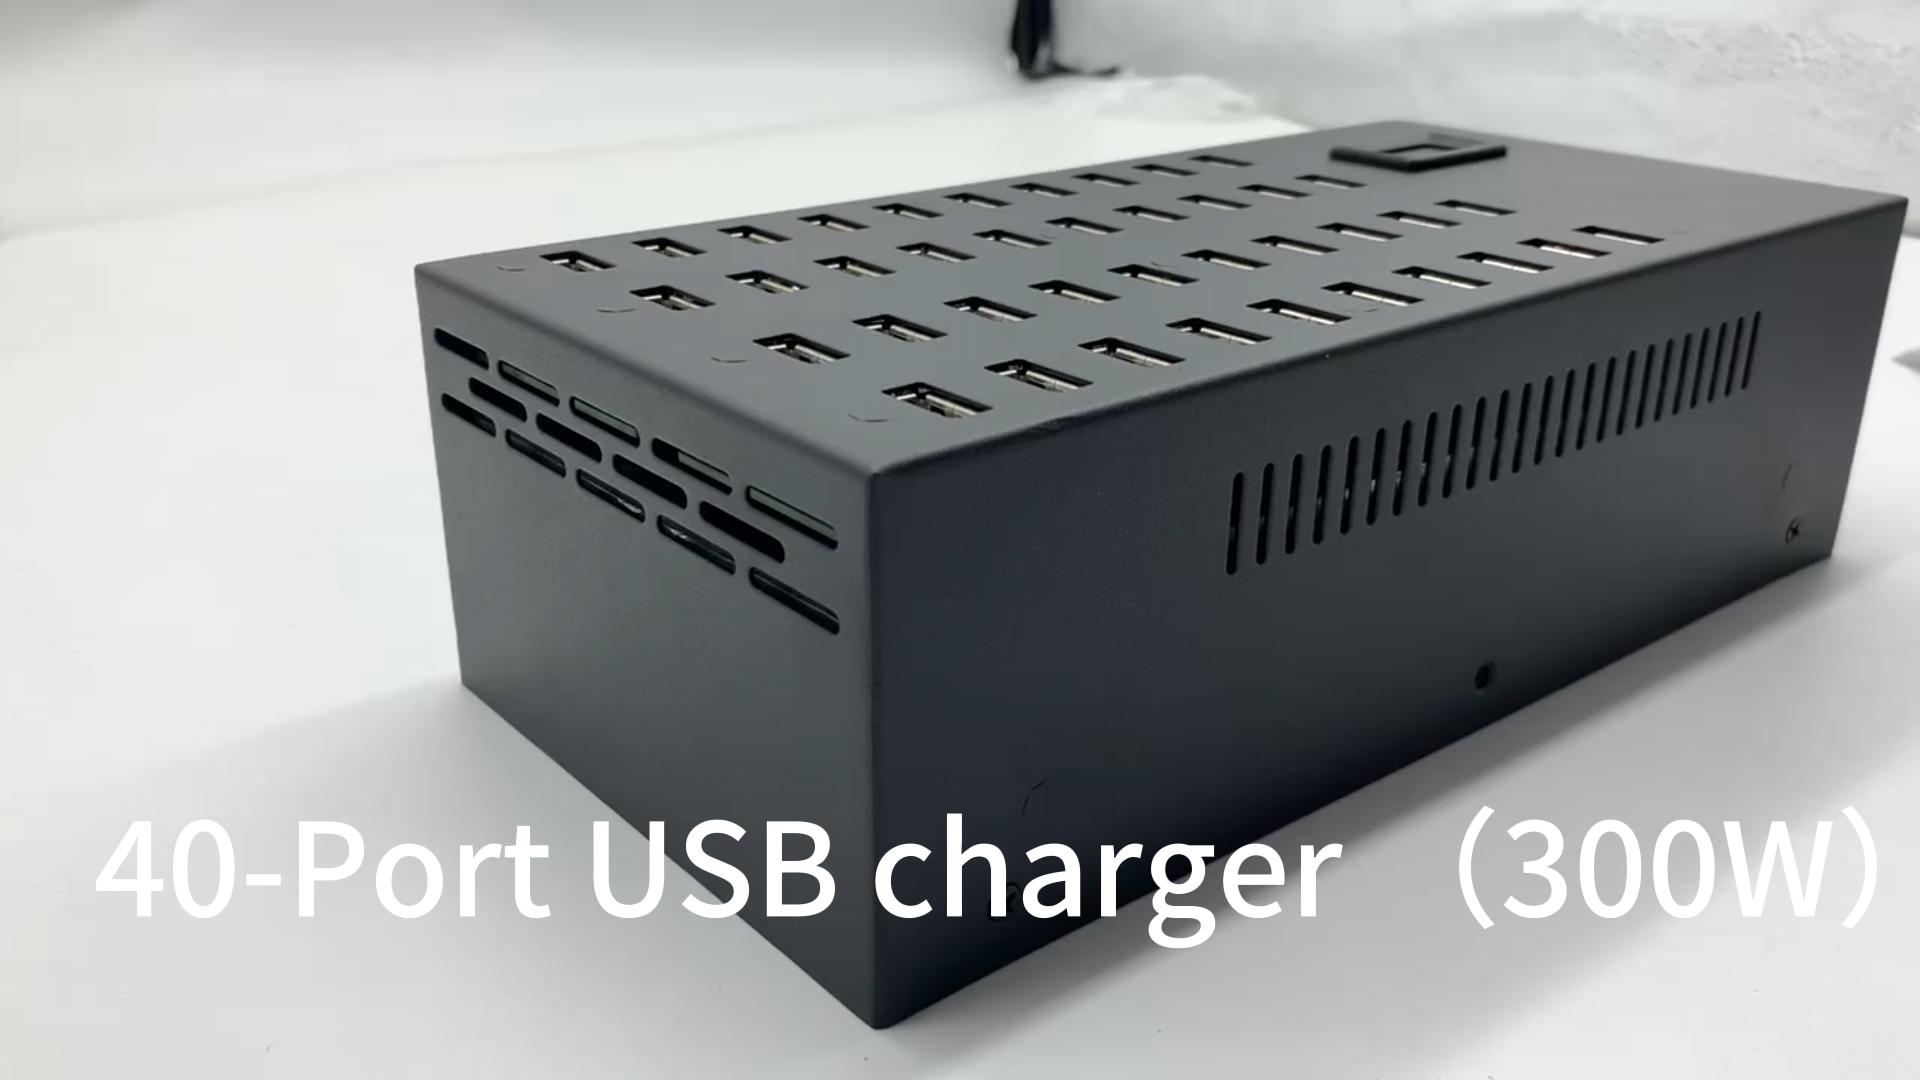 Carregador USB de 40 portas （300W）